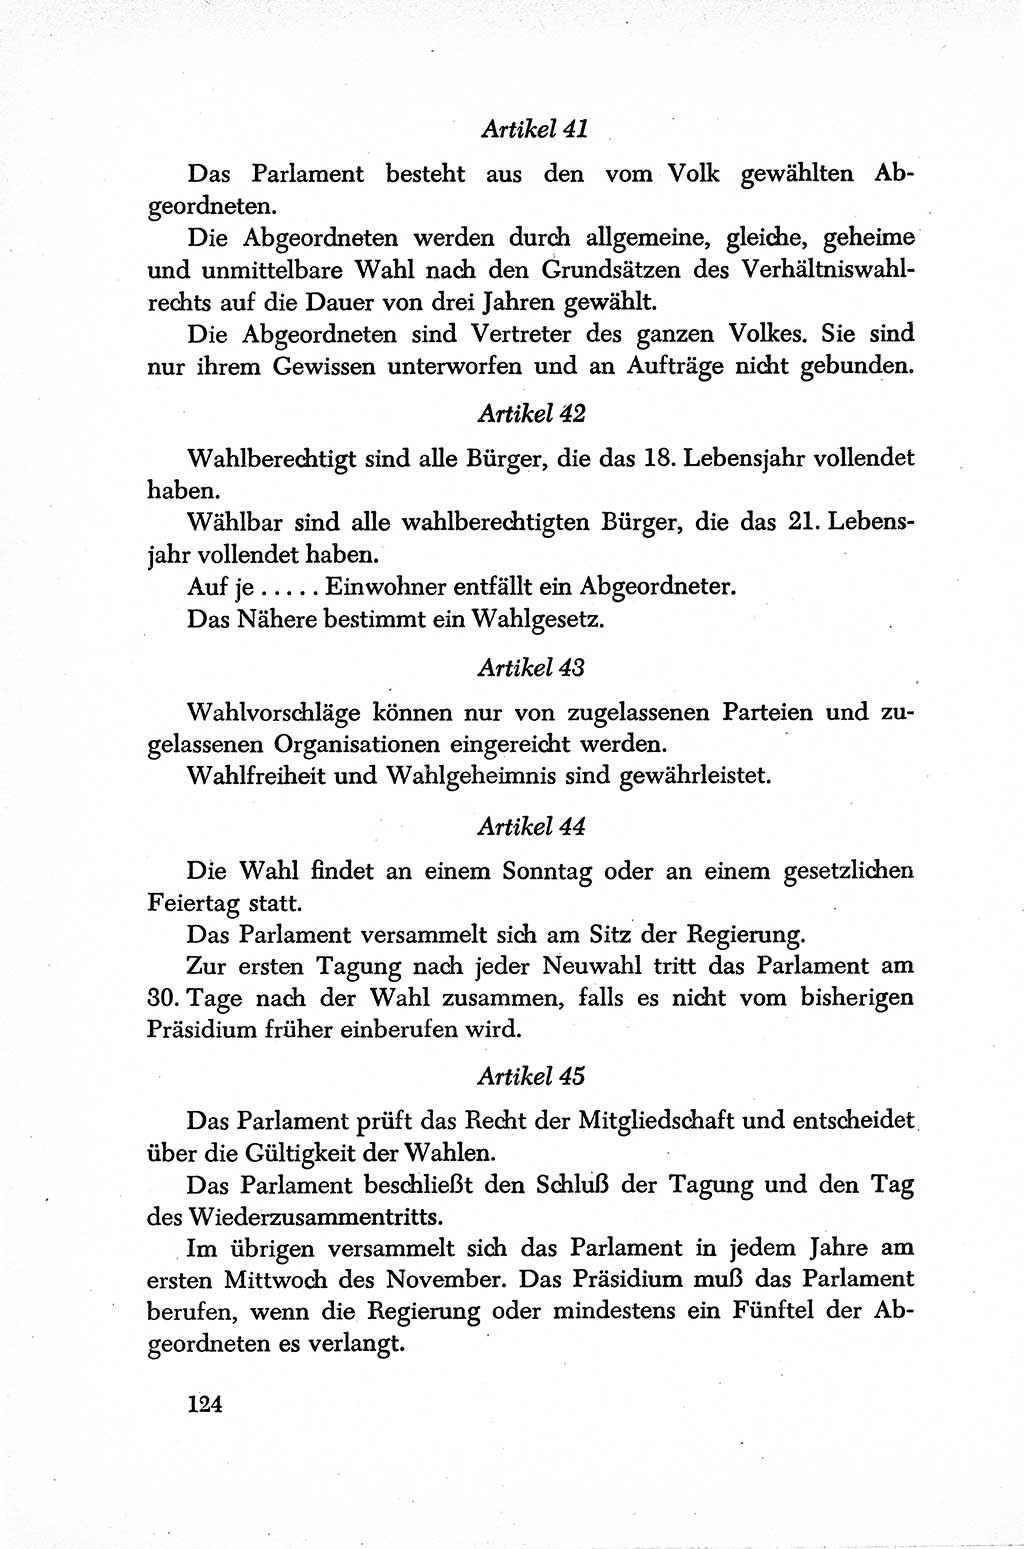 Dokumente der Sozialistischen Einheitspartei Deutschlands (SED) [Sowjetische Besatzungszone (SBZ) Deutschlands] 1946-1948, Seite 124 (Dok. SED SBZ Dtl. 1946-1948, S. 124)